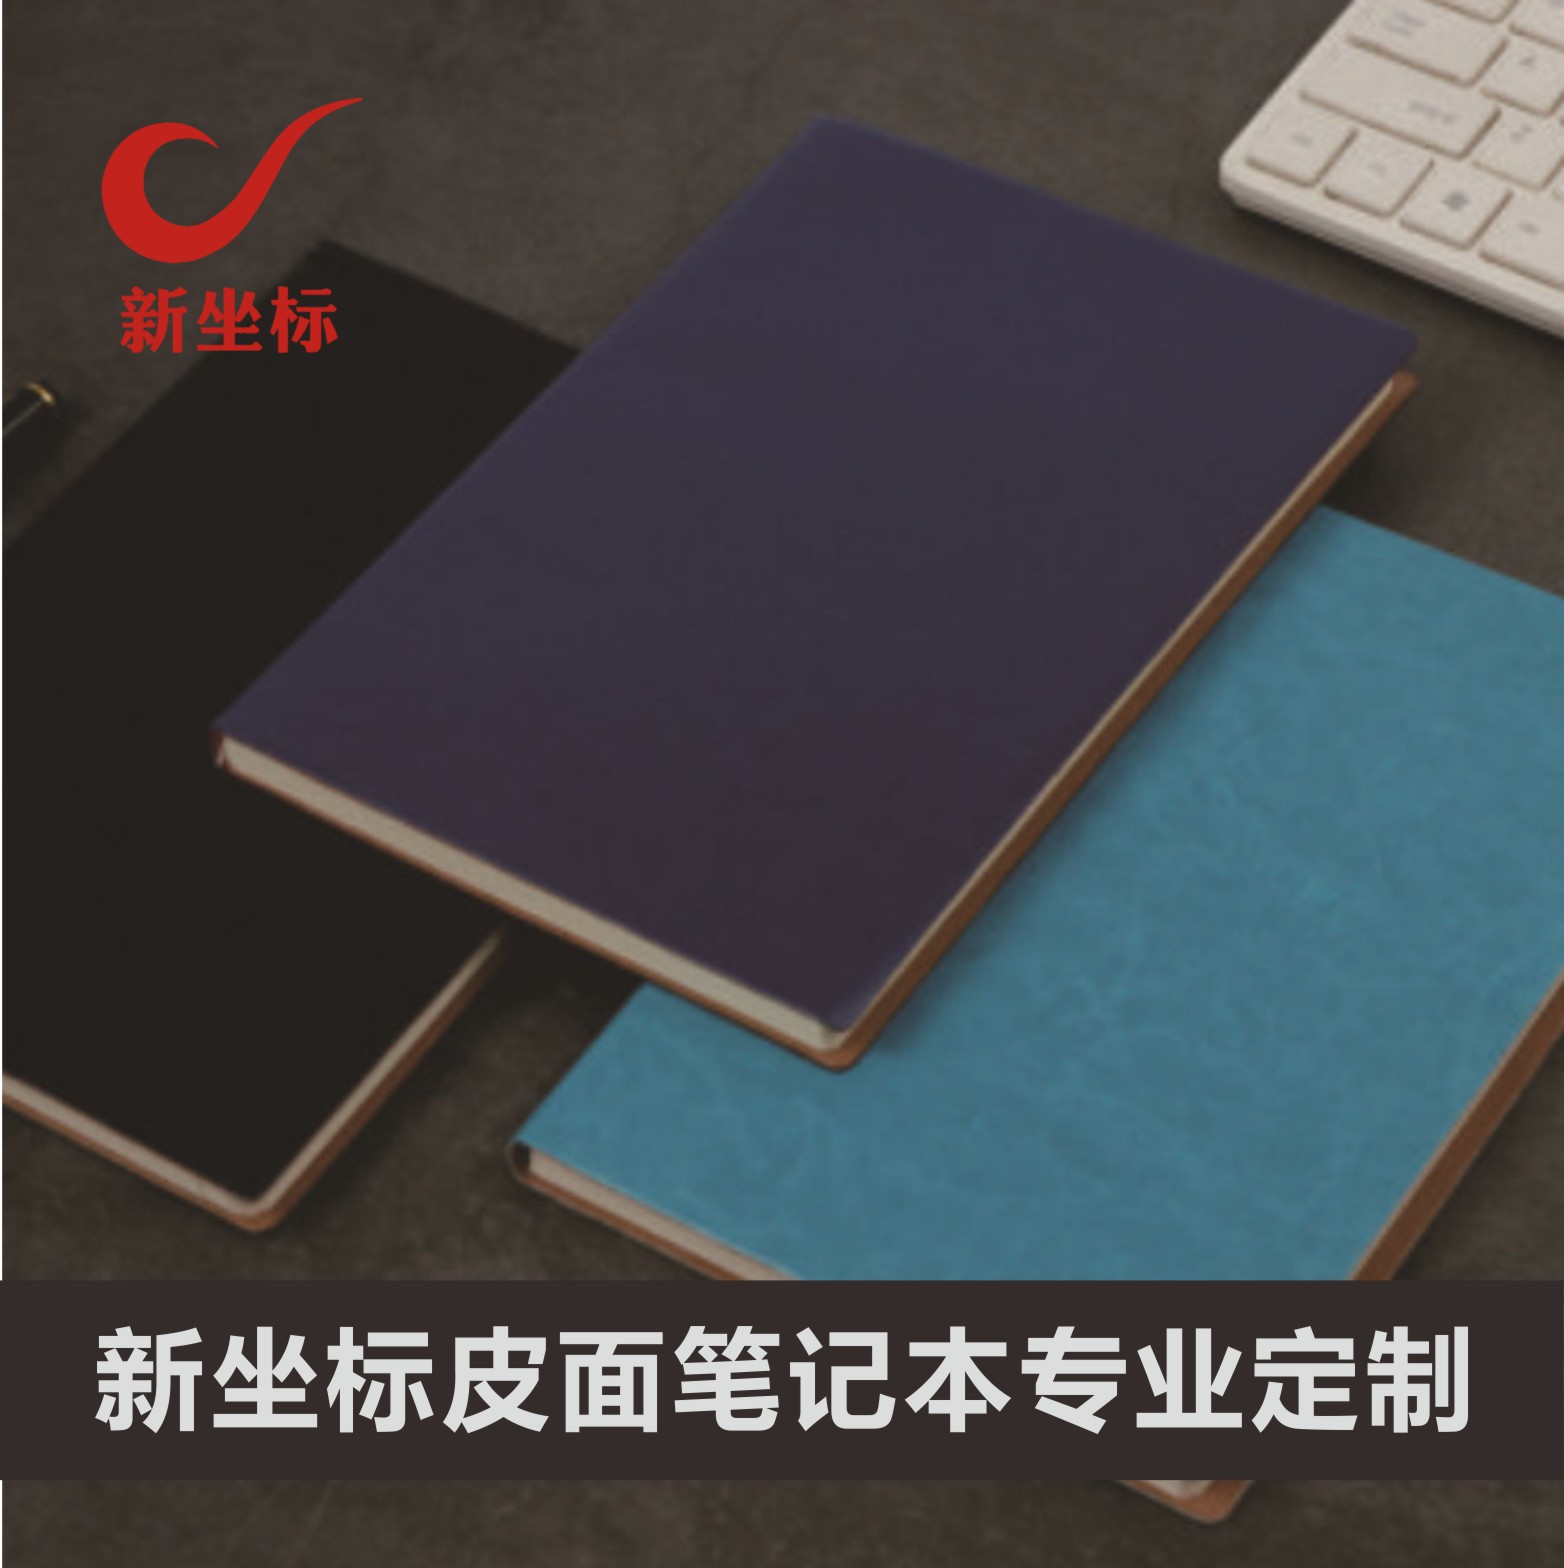 新坐标包装 工厂直营 LOGO定制 日记本 笔记本定制 各种尺寸规格 物美价廉